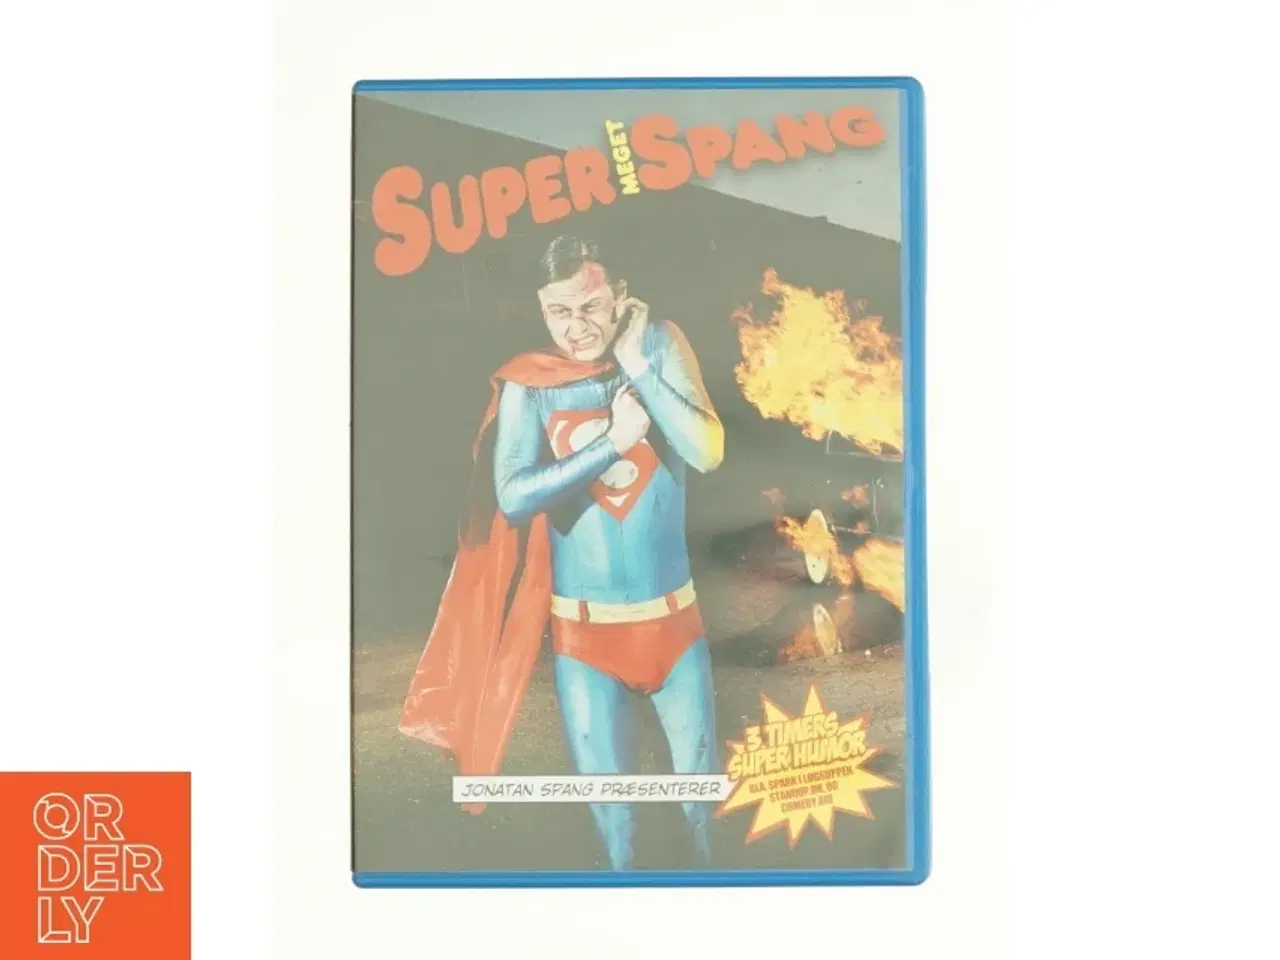 Billede 1 - Super Meget Spang fra DVD